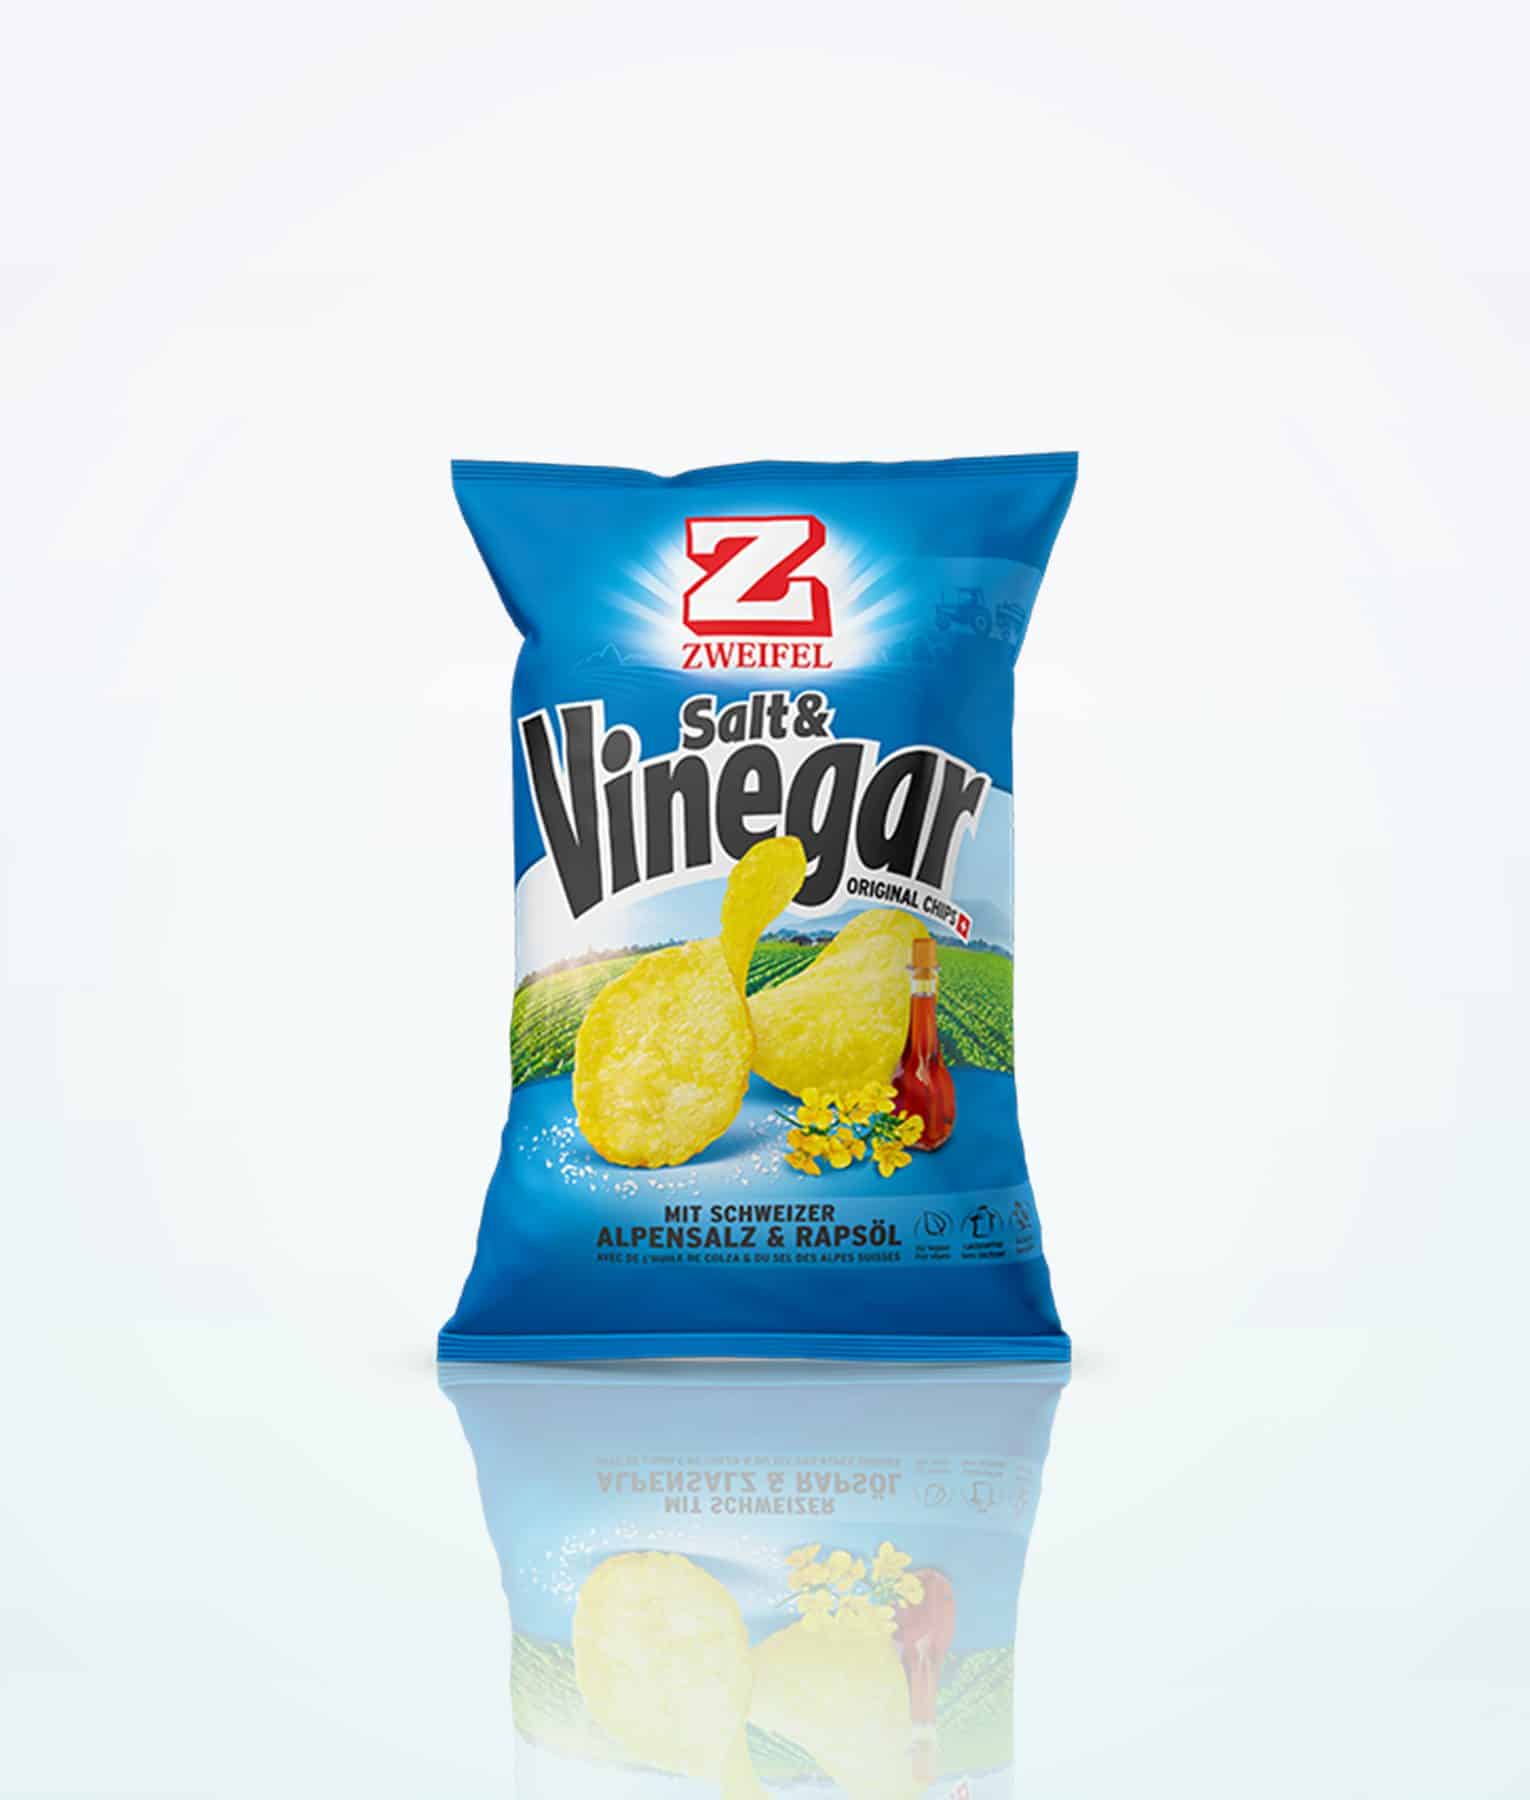 Zweifel Original Chips Salt Vinegar 170g